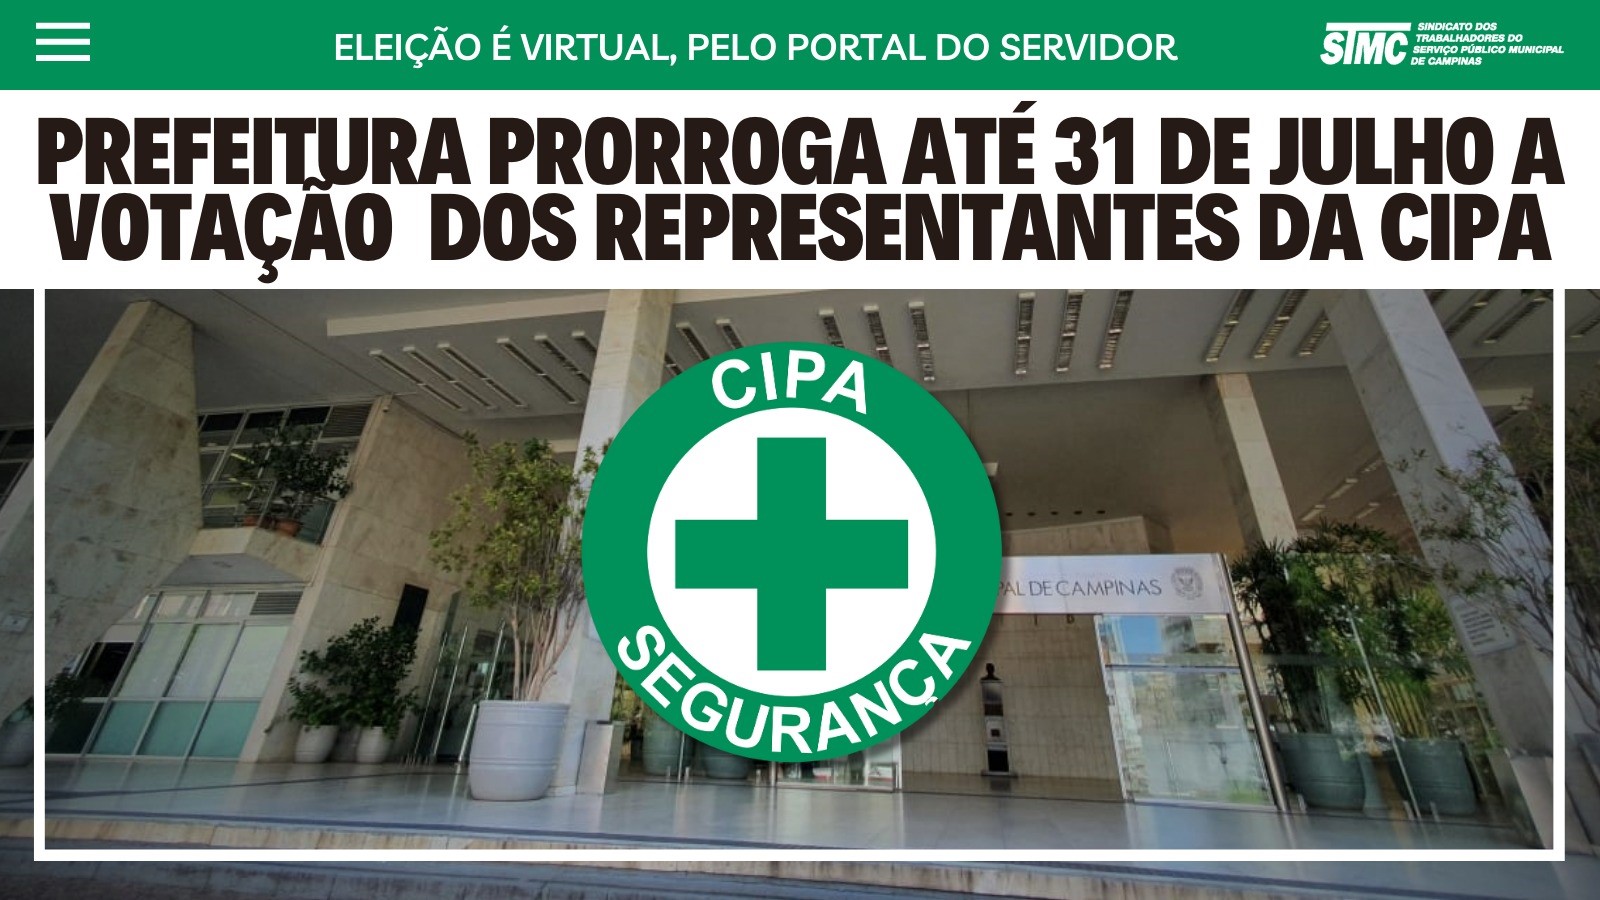 CIPA DA PREFEITURA: Votação foi prorrogada para até 31 de julho.